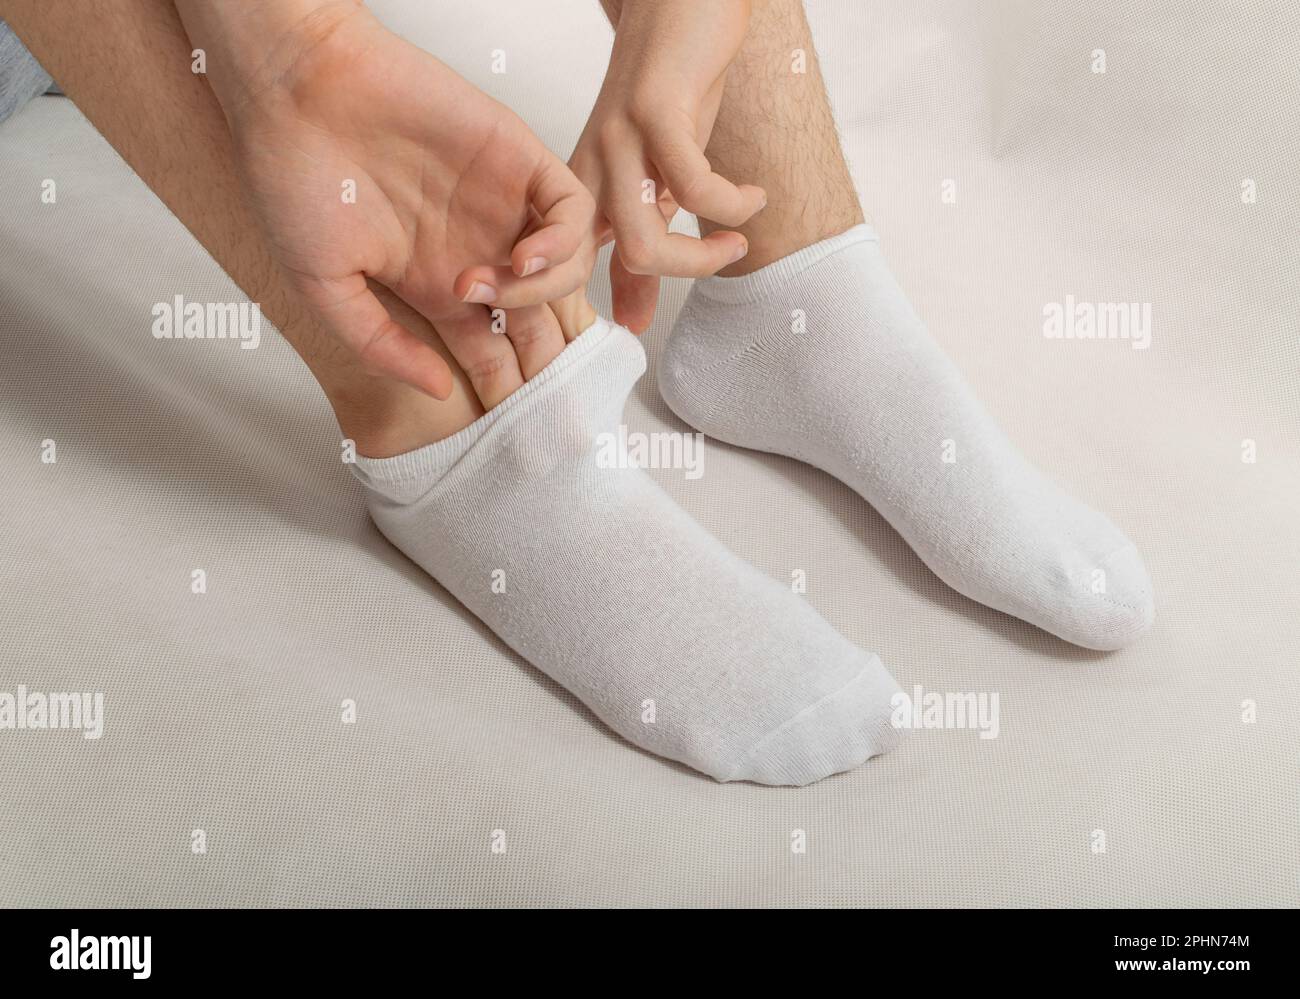 https://c8.alamy.com/compes/2phn74m/el-muchacho-se-pone-calcetines-blancos-hombre-poniendo-calcetin-en-invierno-frio-o-quitarselo-en-casa-2phn74m.jpg